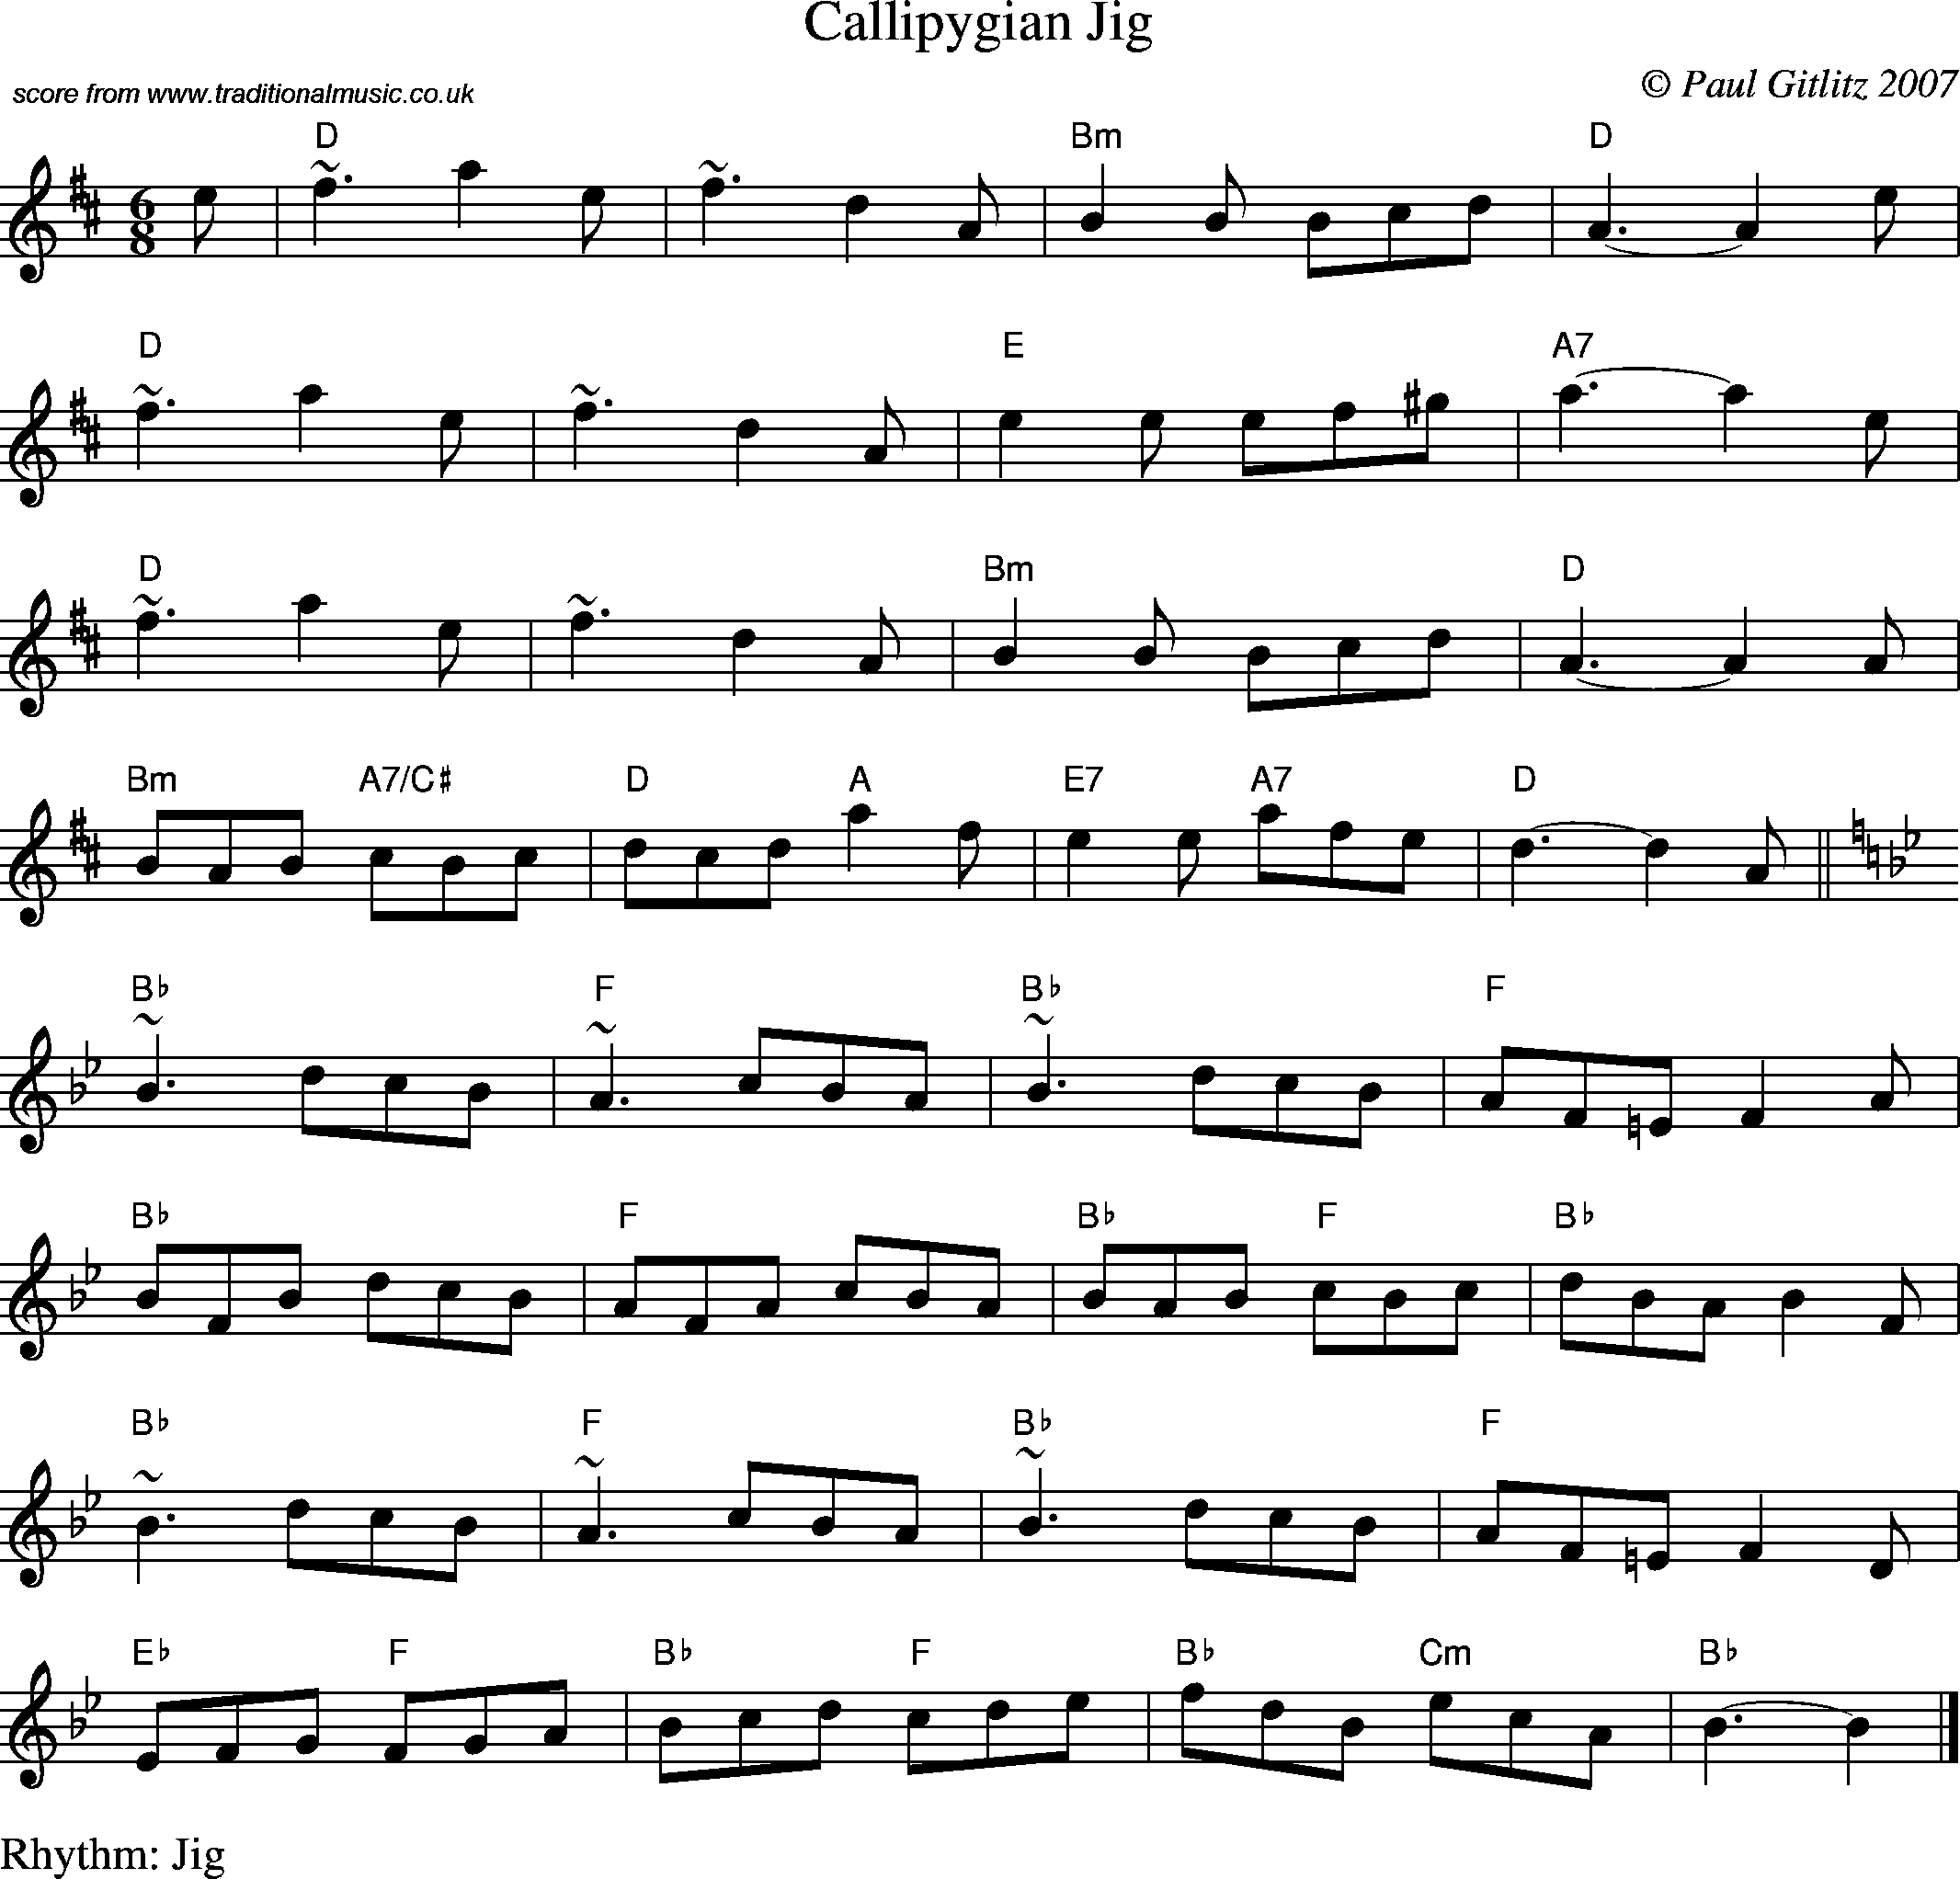 Sheet Music Score for Jig - Callipygian Jig